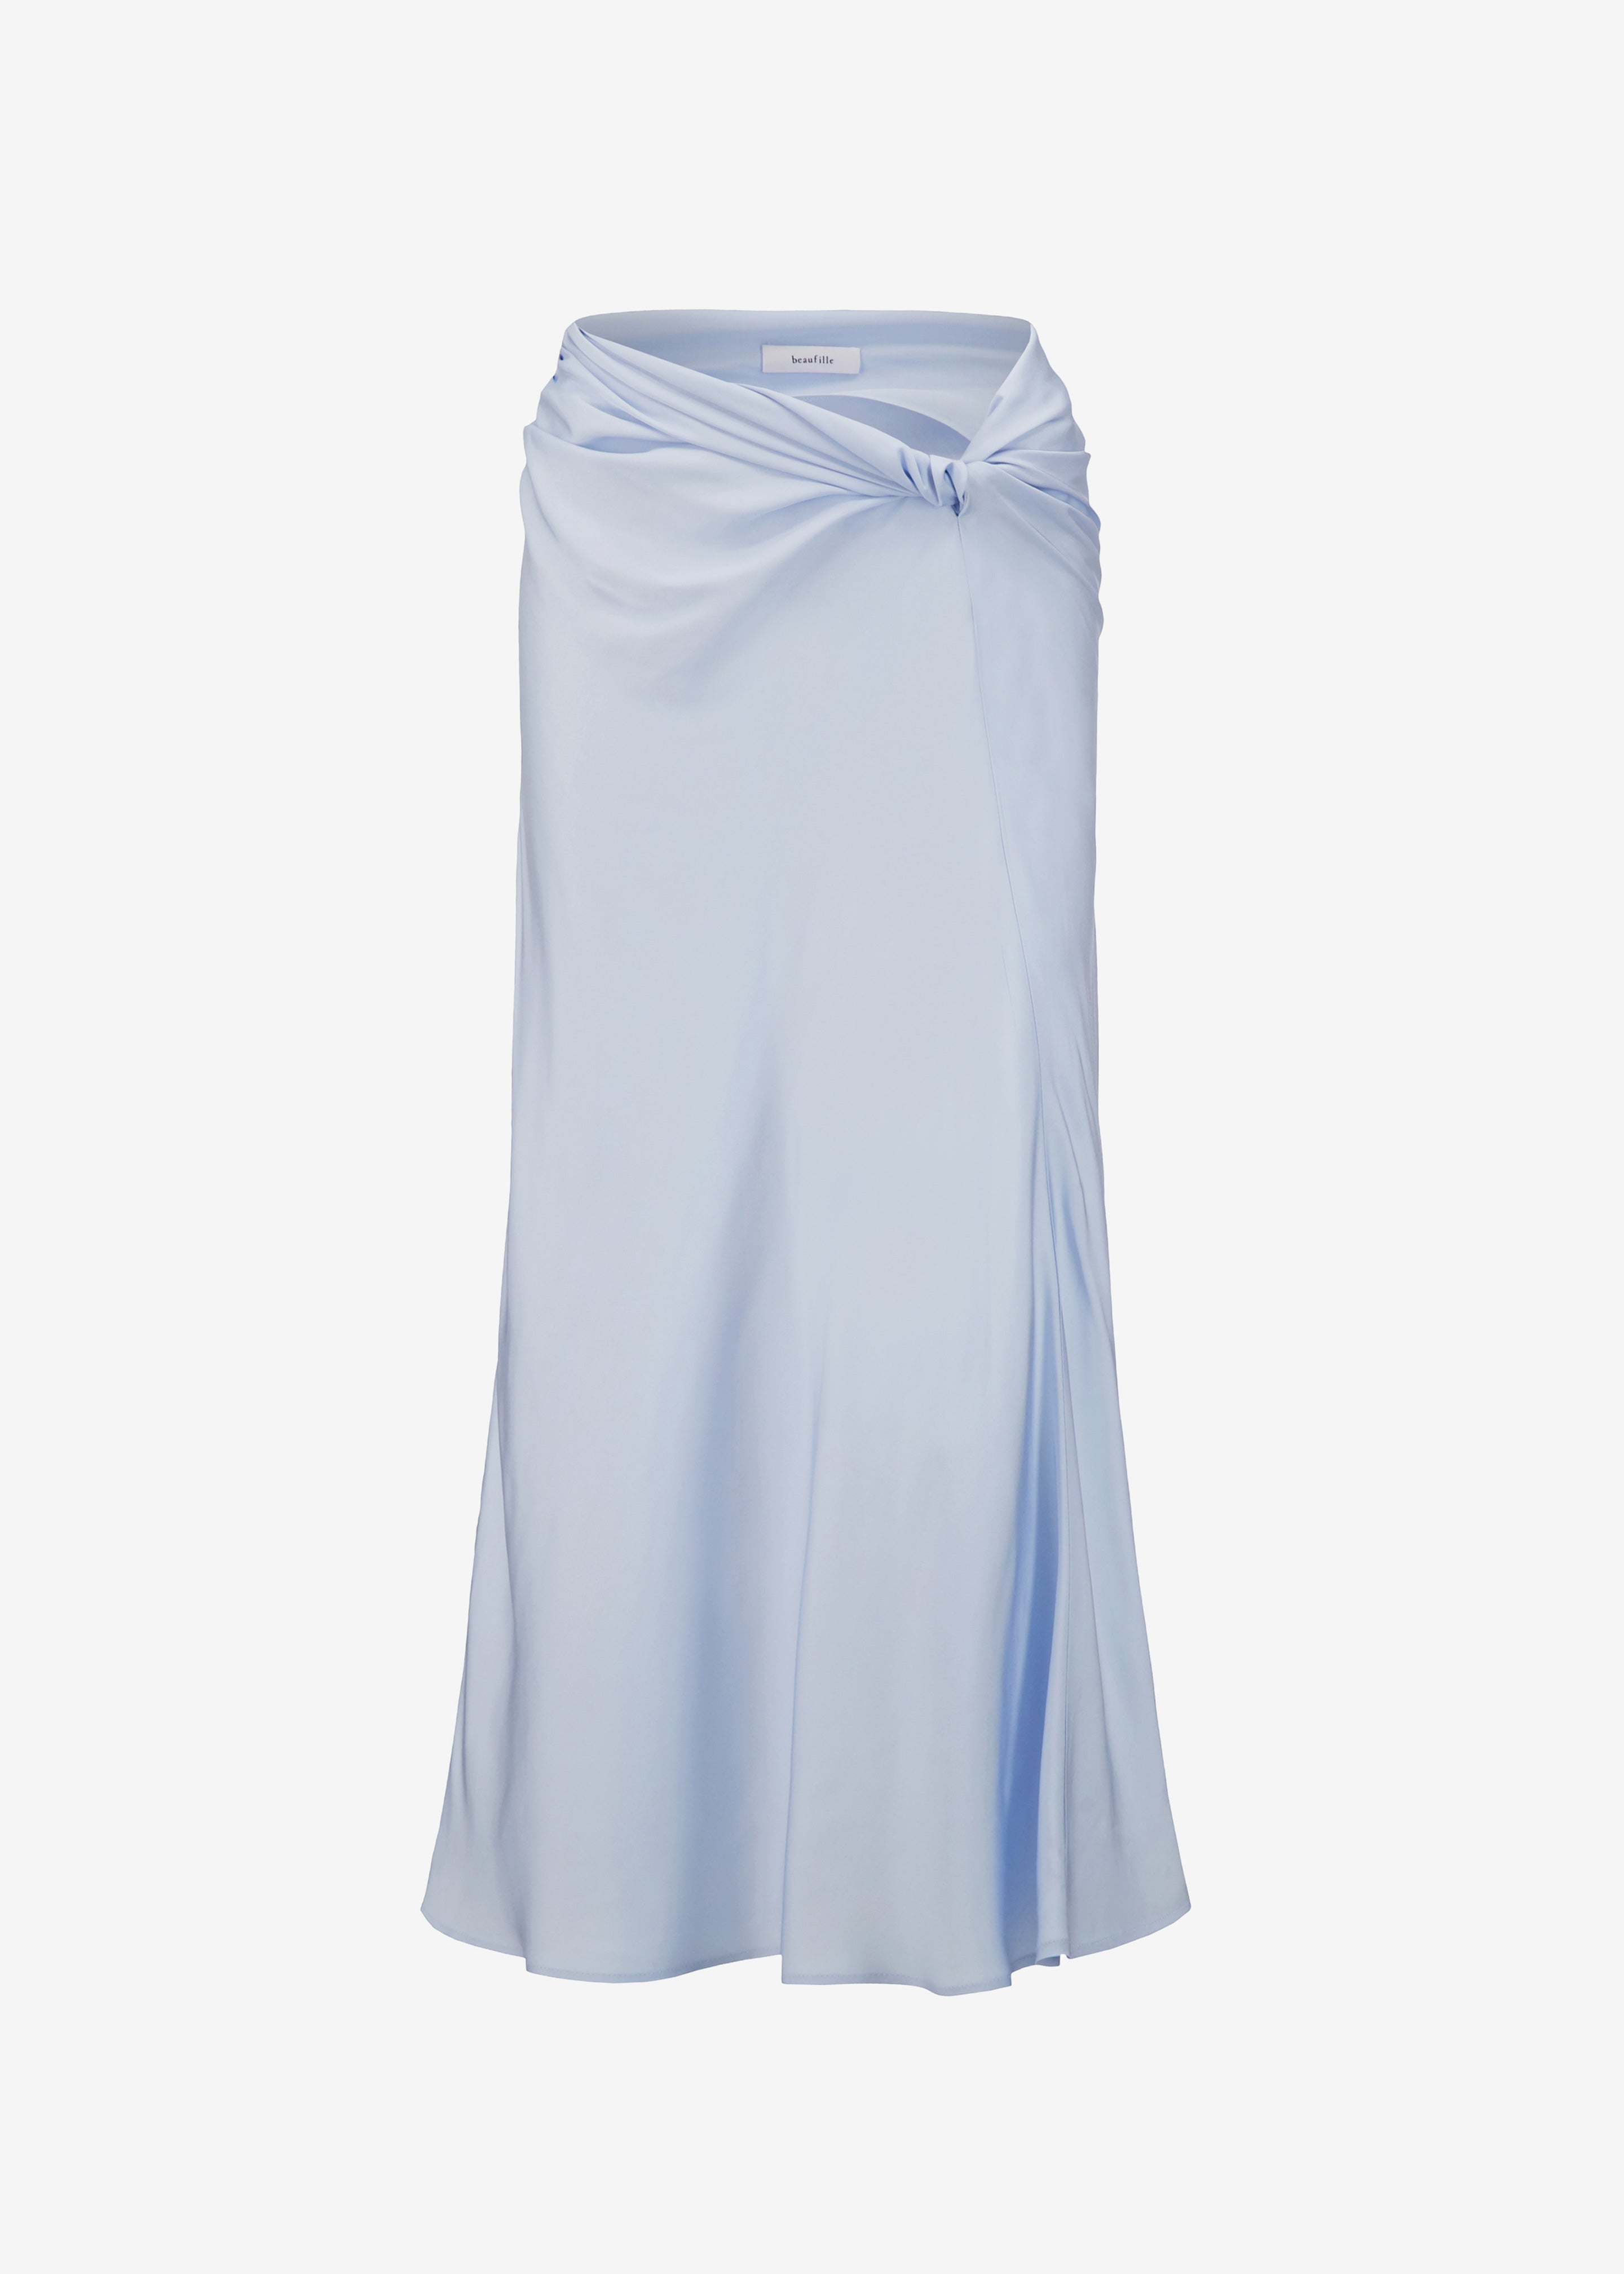 Beaufille Vela Skirt - Powder Blue - 9